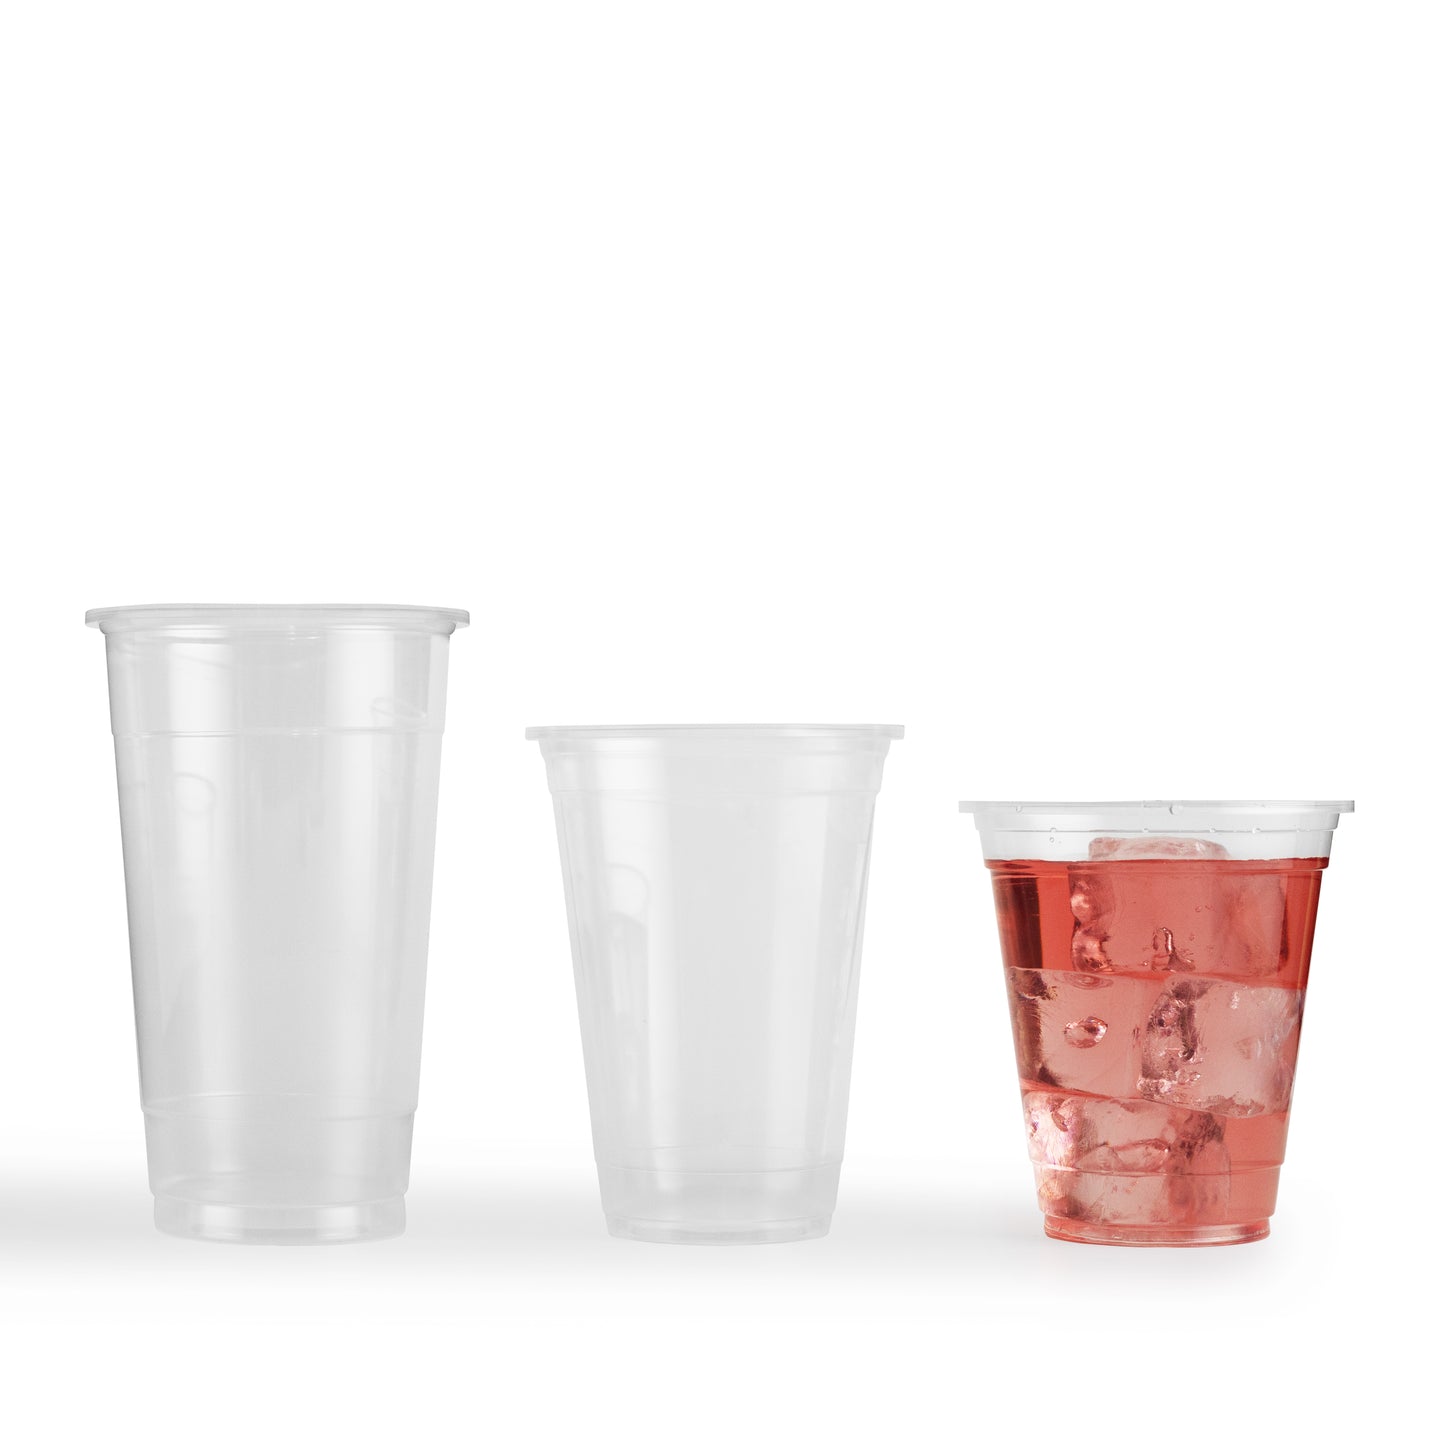 Bicchieri di Plastica 360ml Bianco